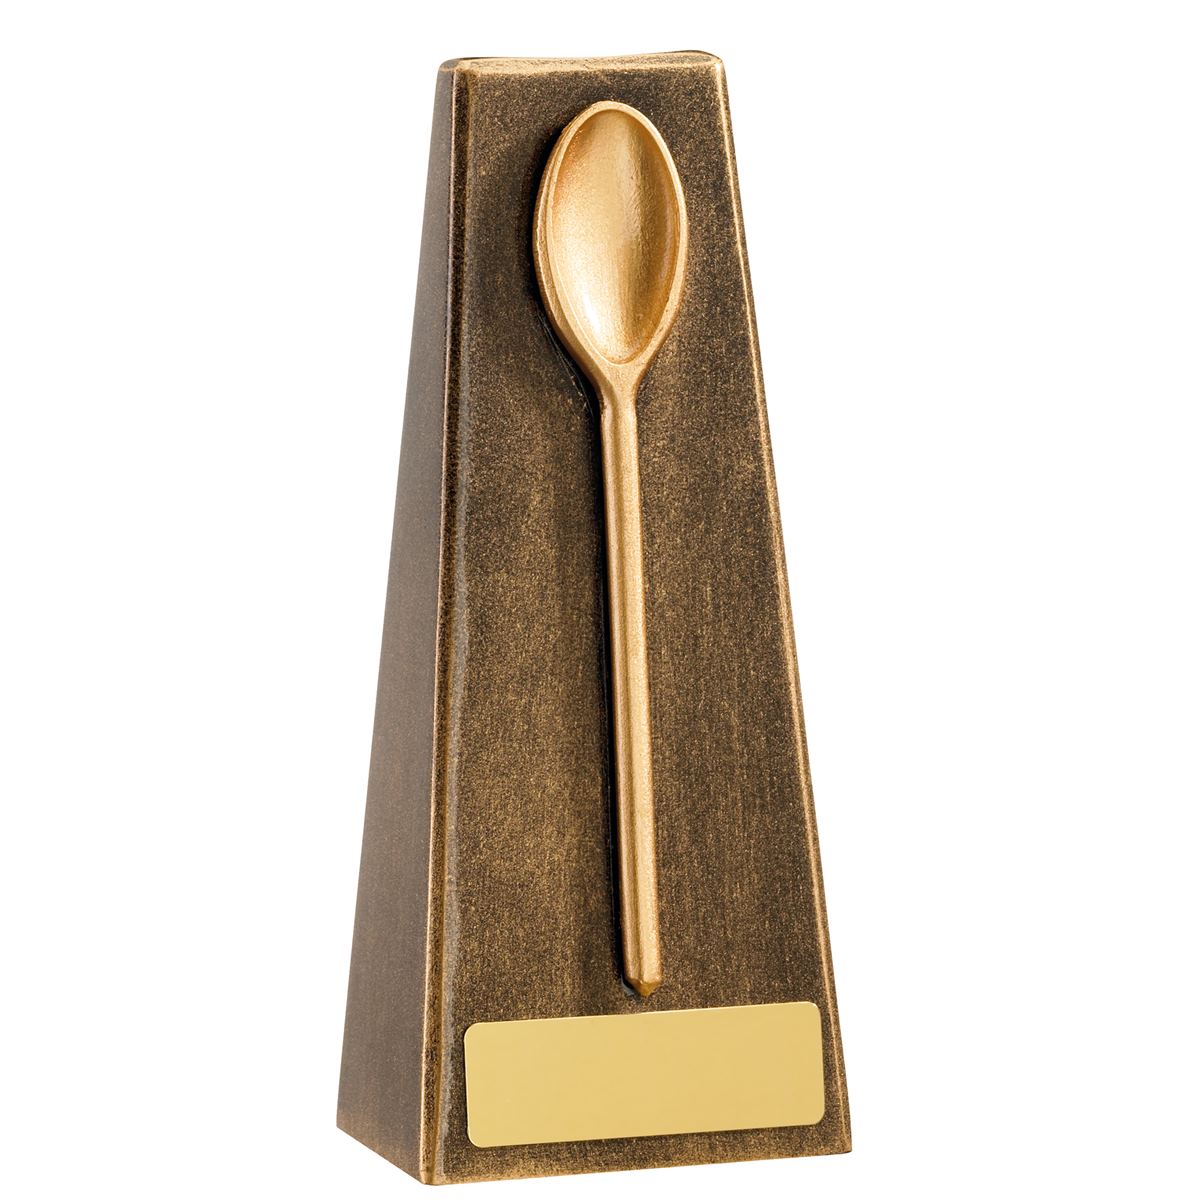 Wooden Spoon Trophy Last Place Award